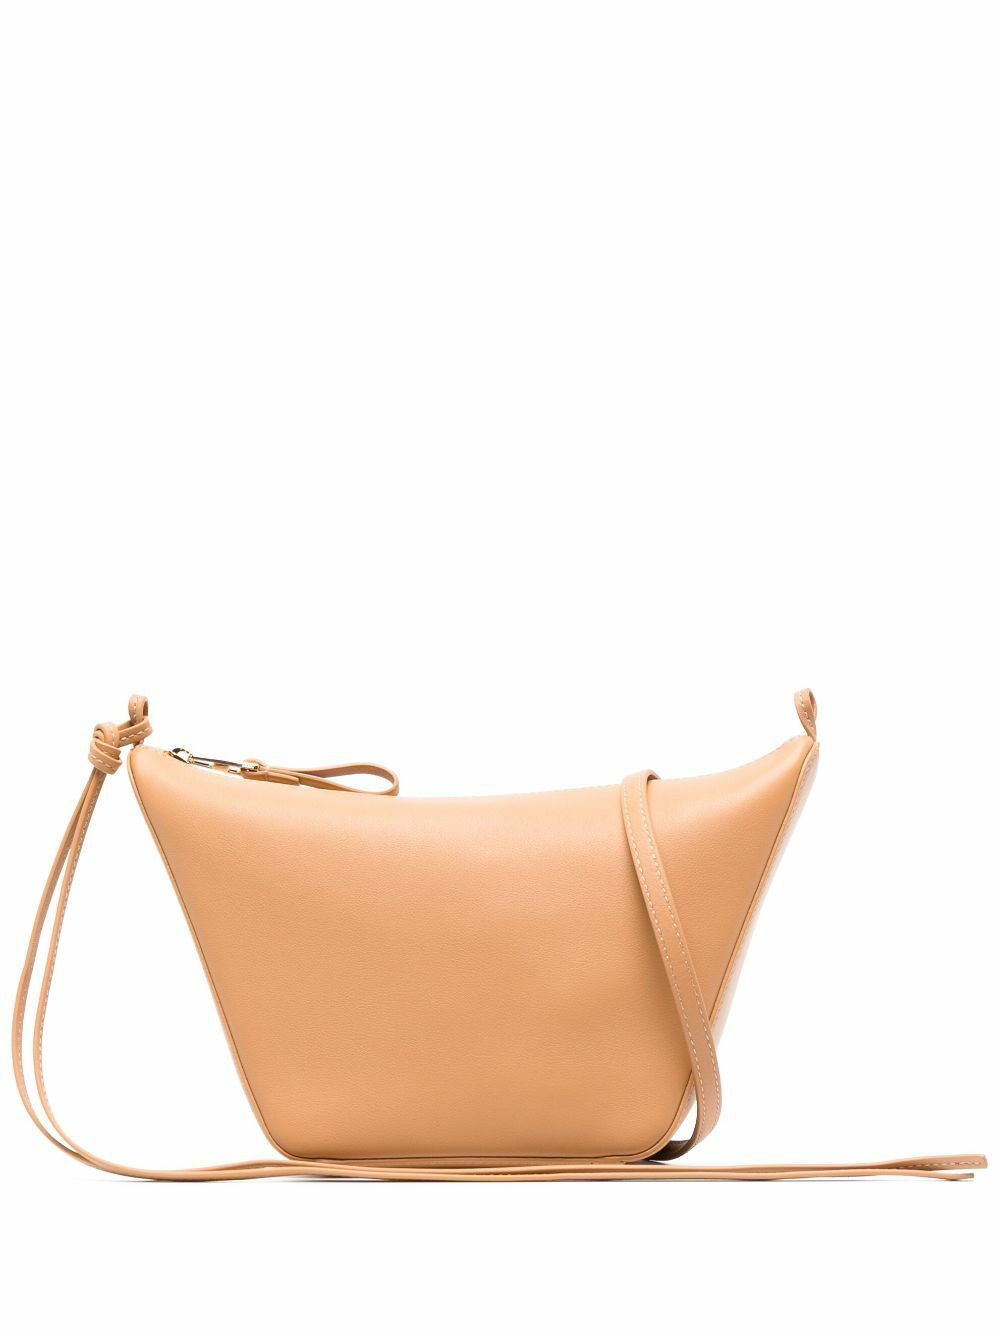 Hammock Mini Leather Shoulder Bag in Brown - Loewe